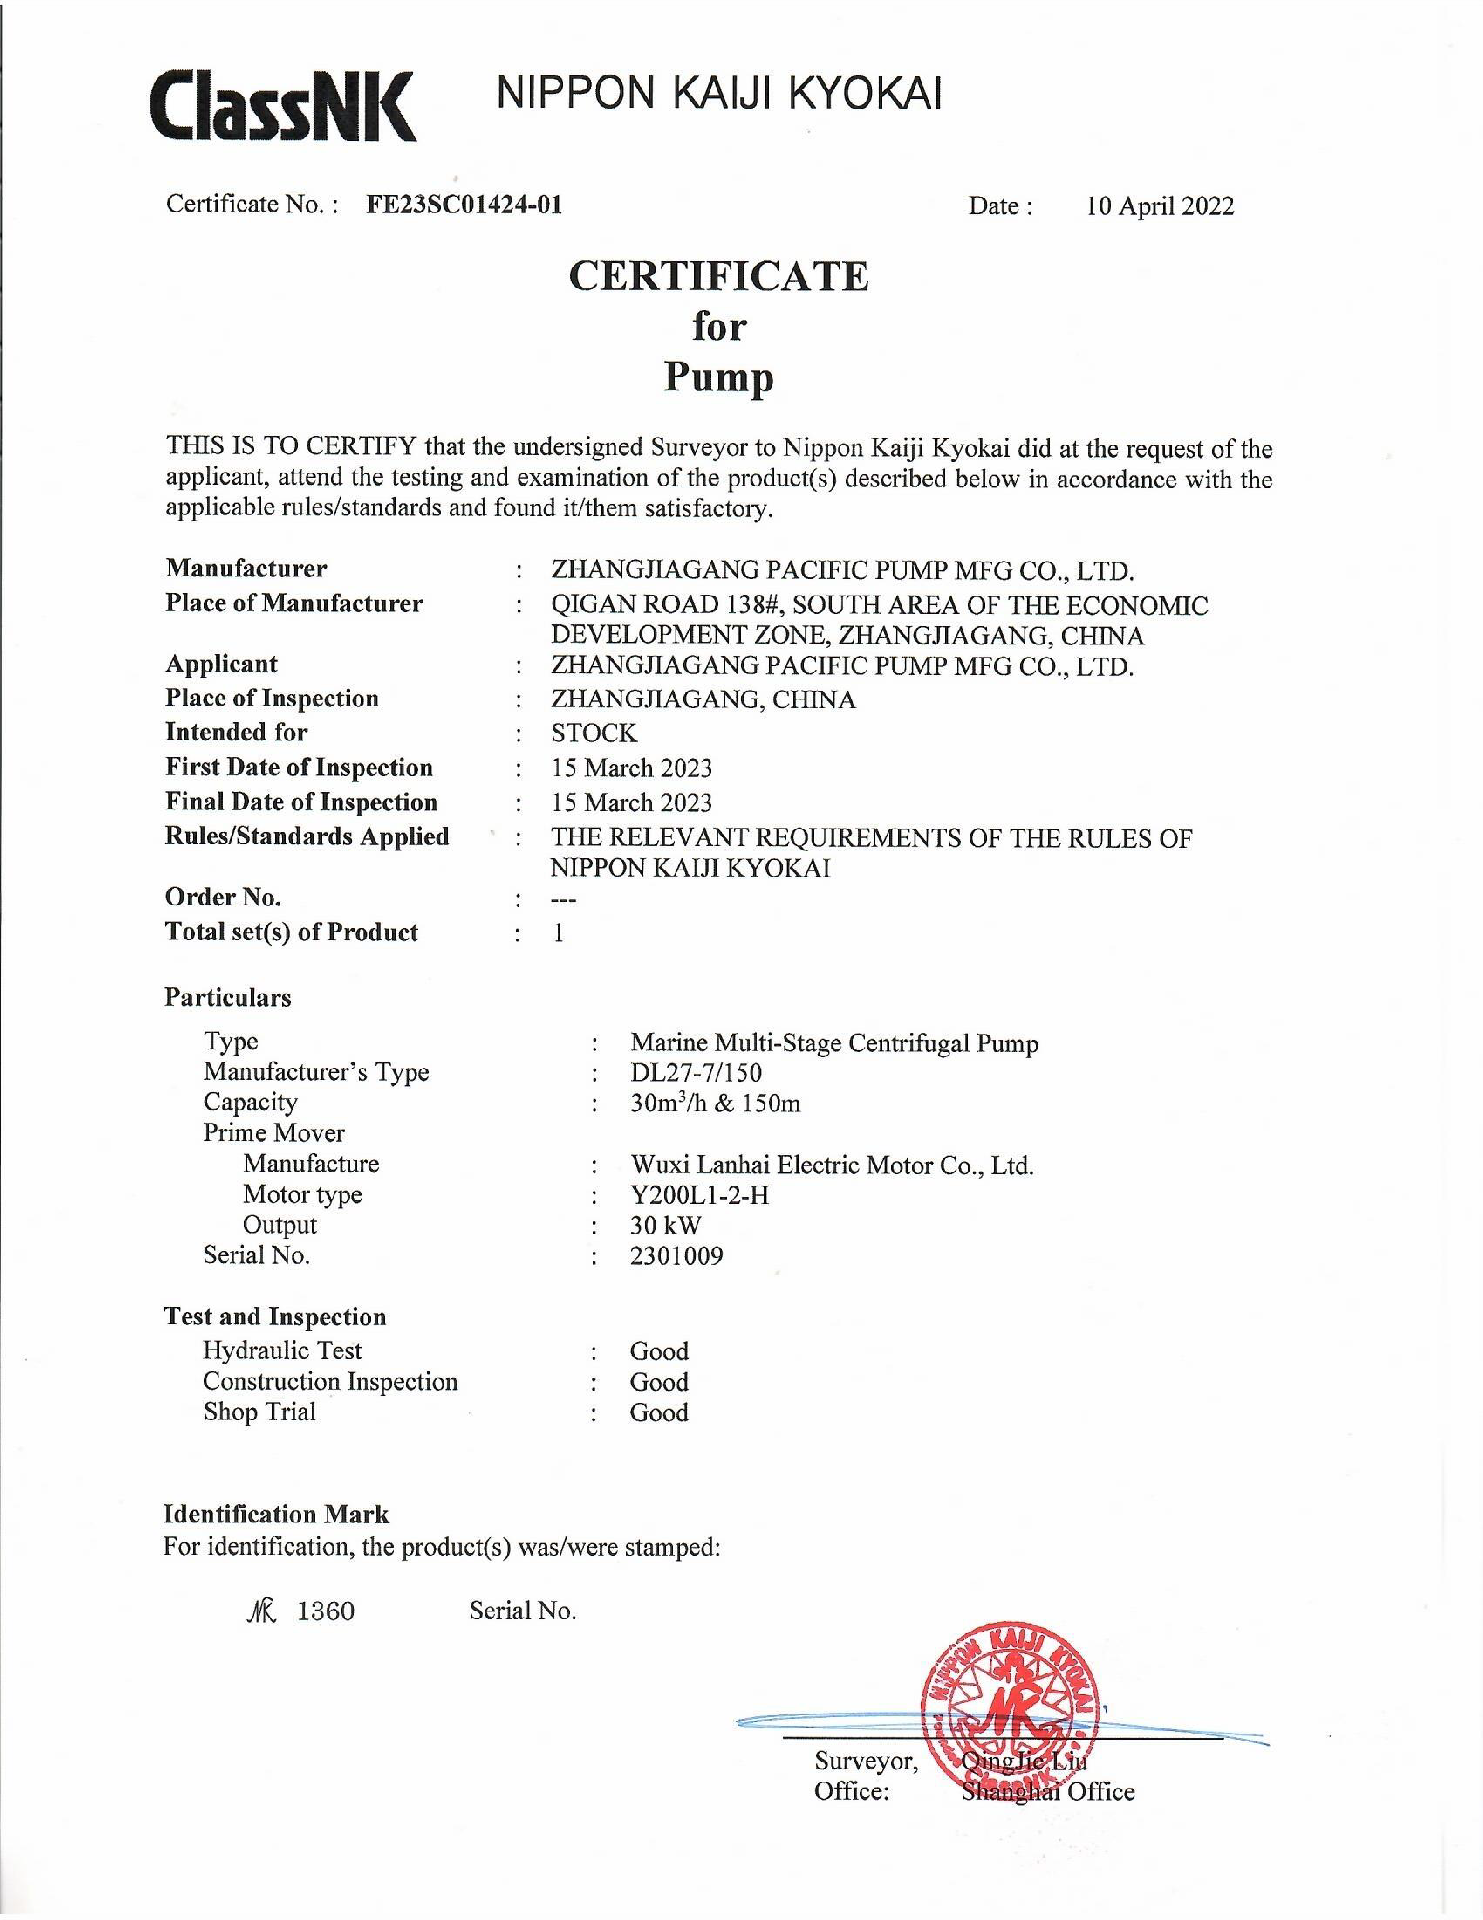 Japan NK certificate for pump